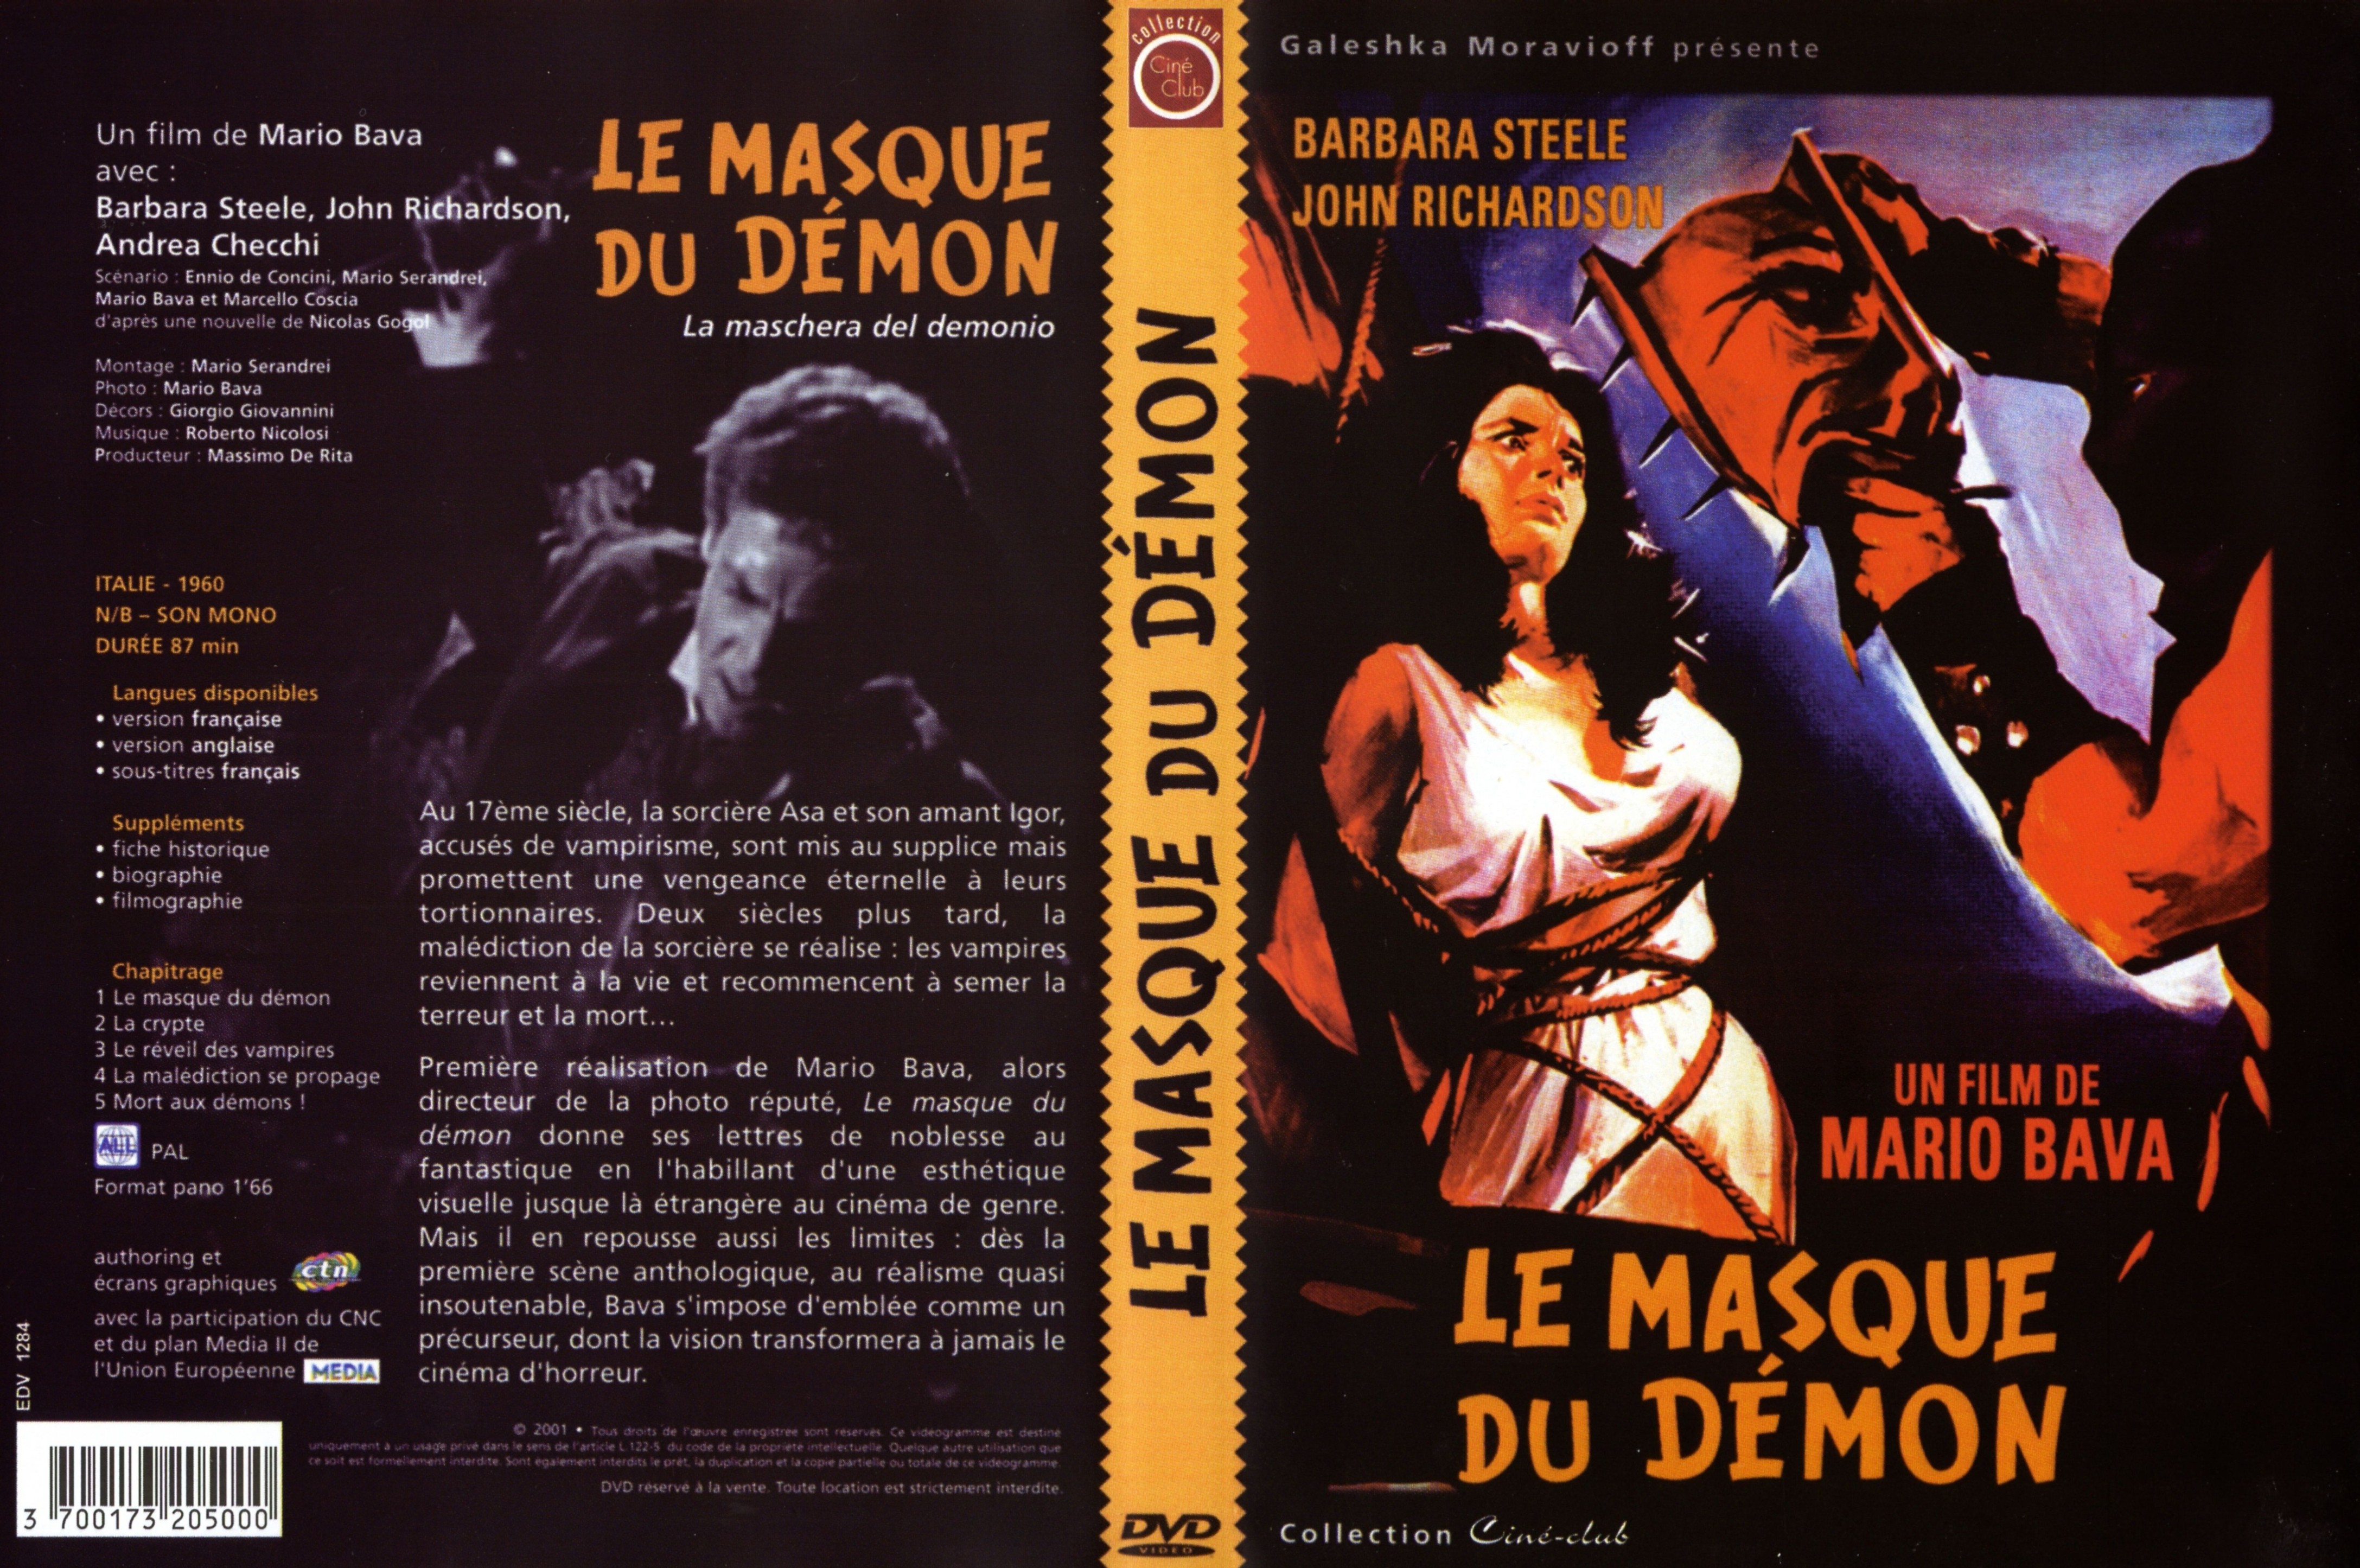 Jaquette DVD Le masque du dmon